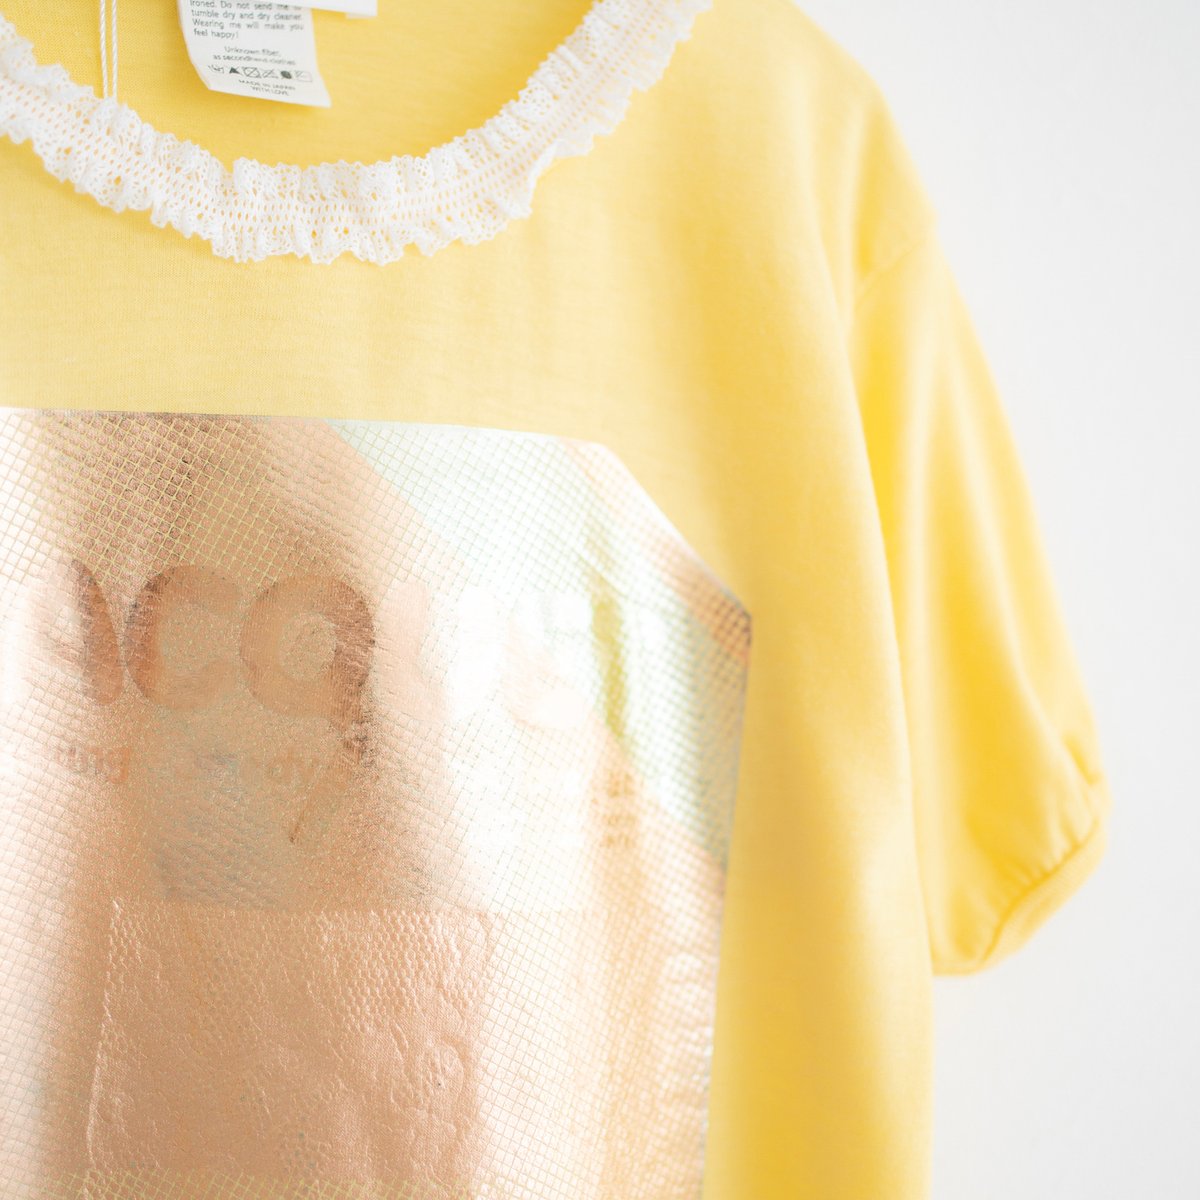 ユキ フジサワが過去のアイテムをリデザイン Tシャツとトート 